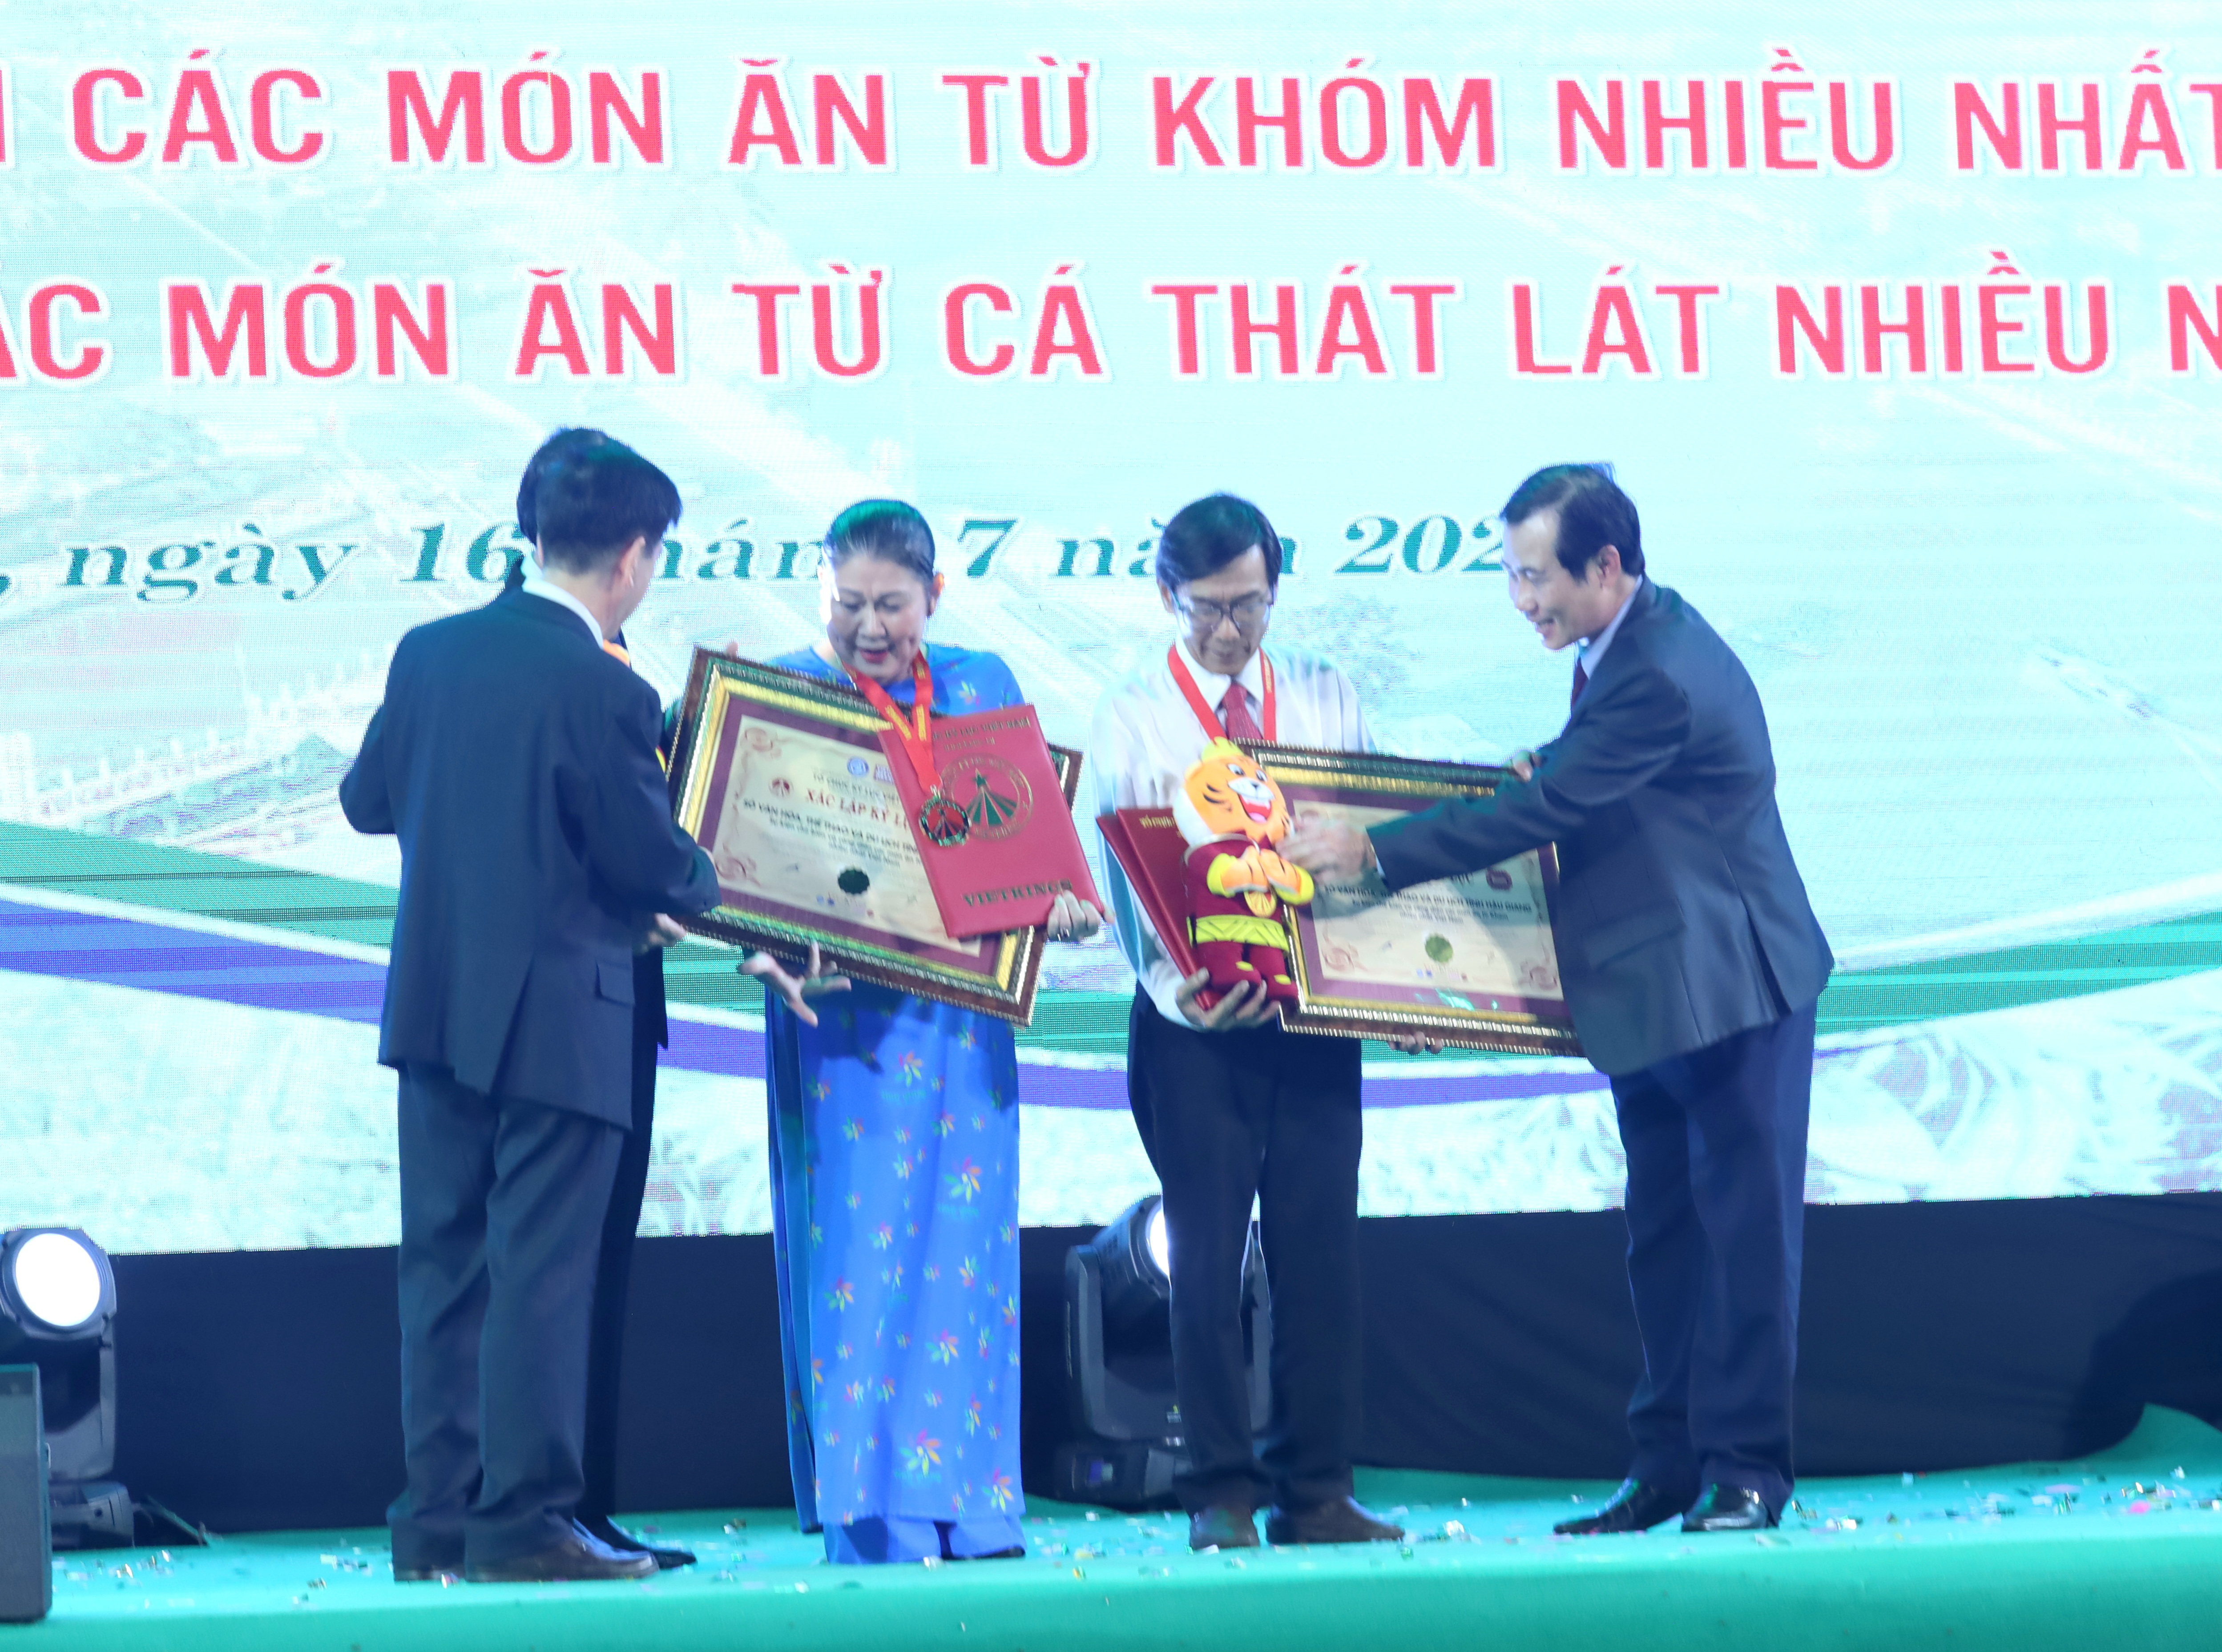 Đại diện tổ chức Kỷ lục Việt Nam (VietKings) trao bằng xác lập kỷ lục cho Sở Văn hóa, Thể thao và Du lịch Tỉnh Hậu Giang.